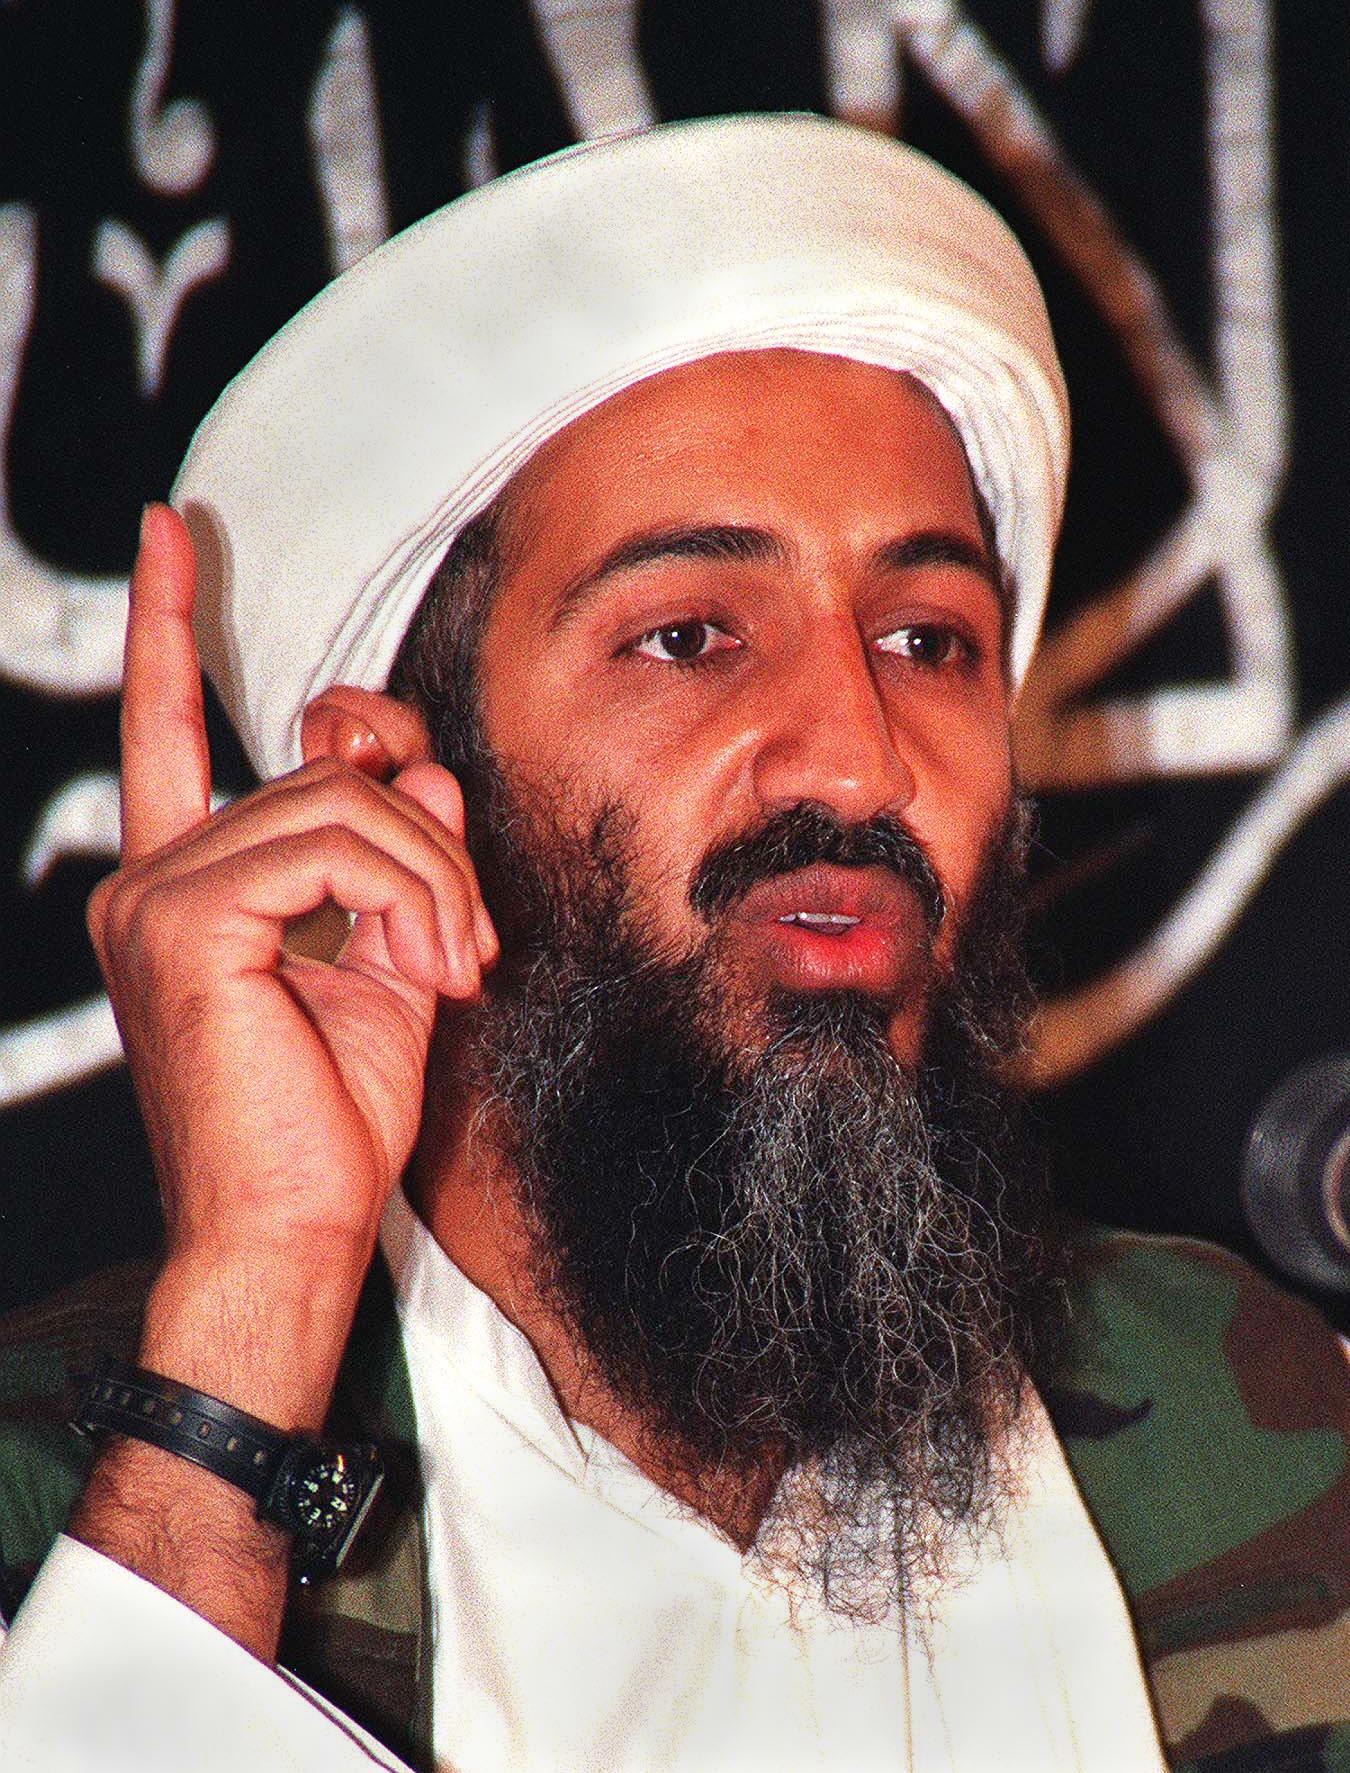 لماذا وصف ولي العهد السعودي أسامة بن لادن بـ"عدو السعودية وأمريكا"؟